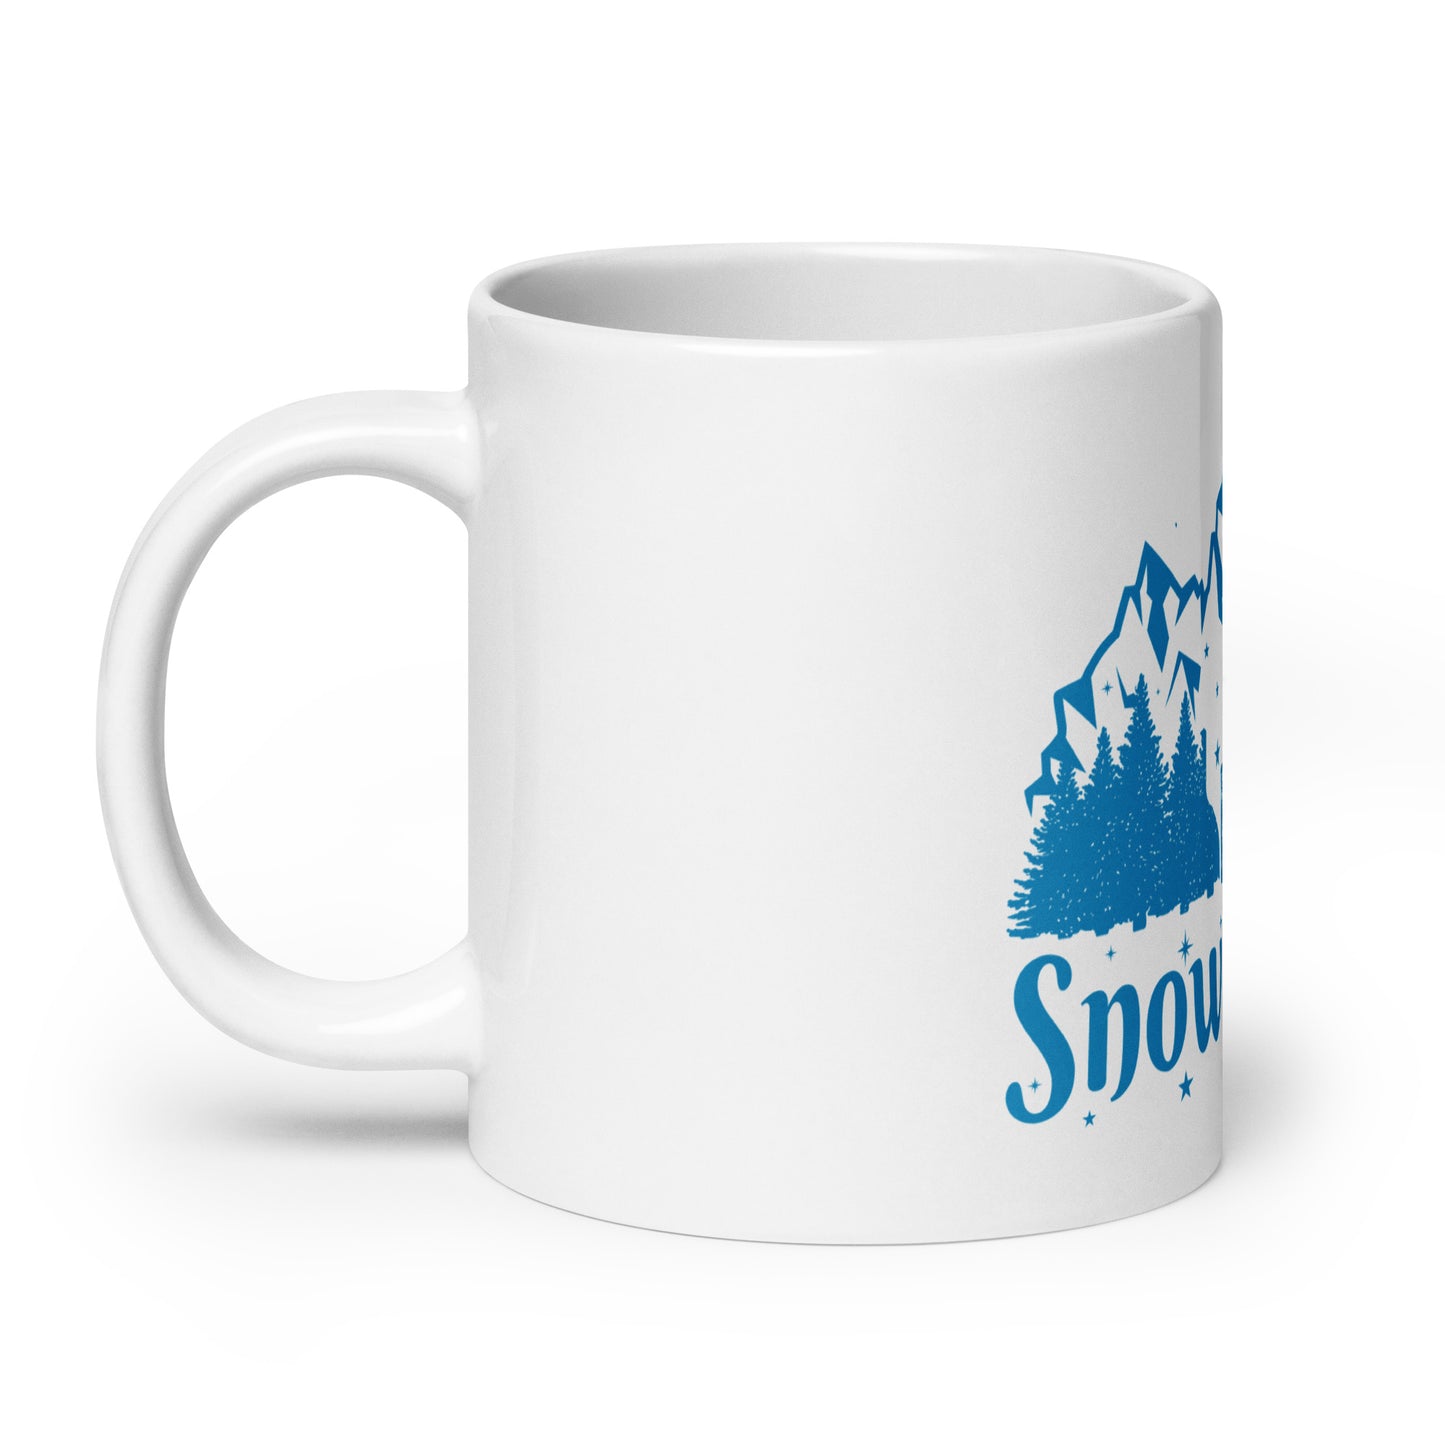 Fuck the Snow & Cold mug